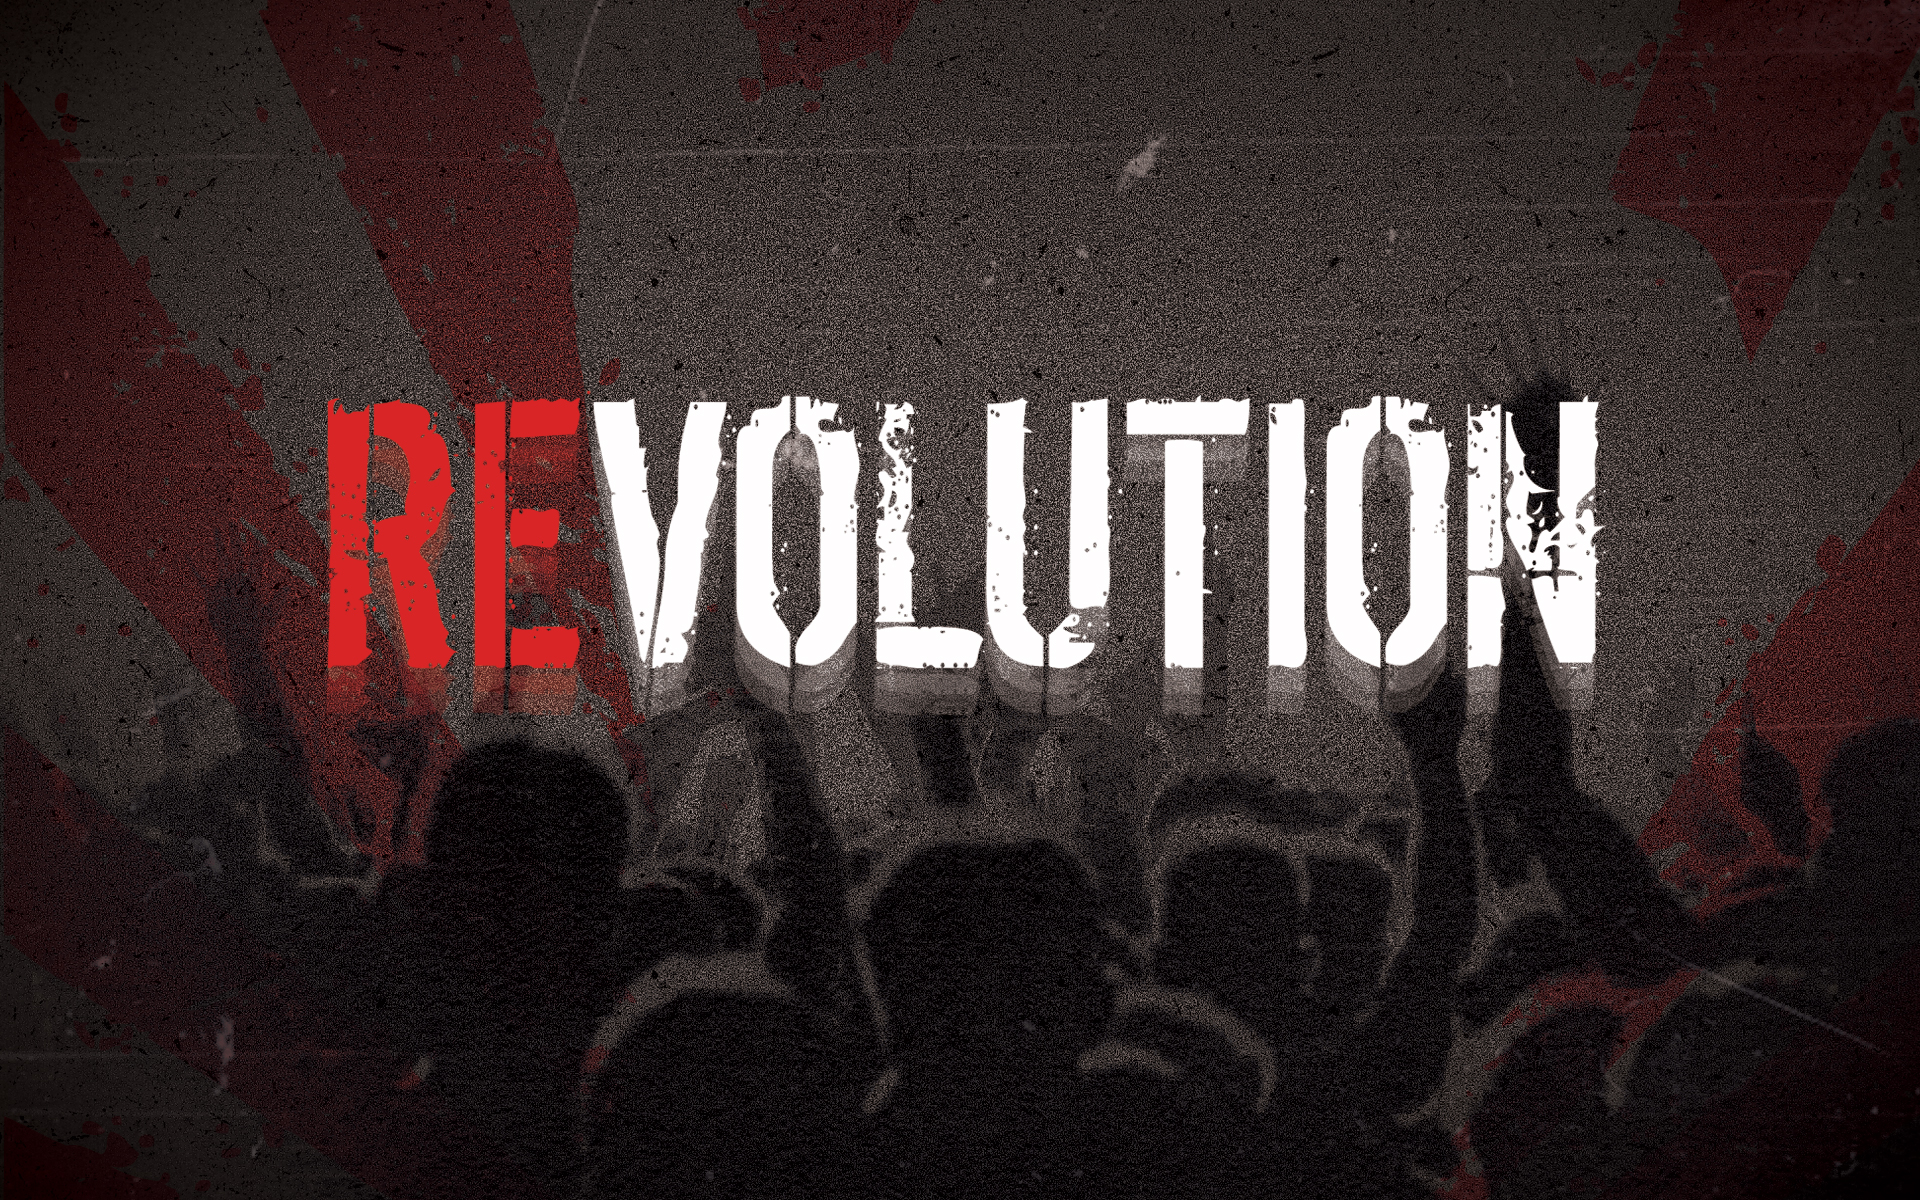 february revolution